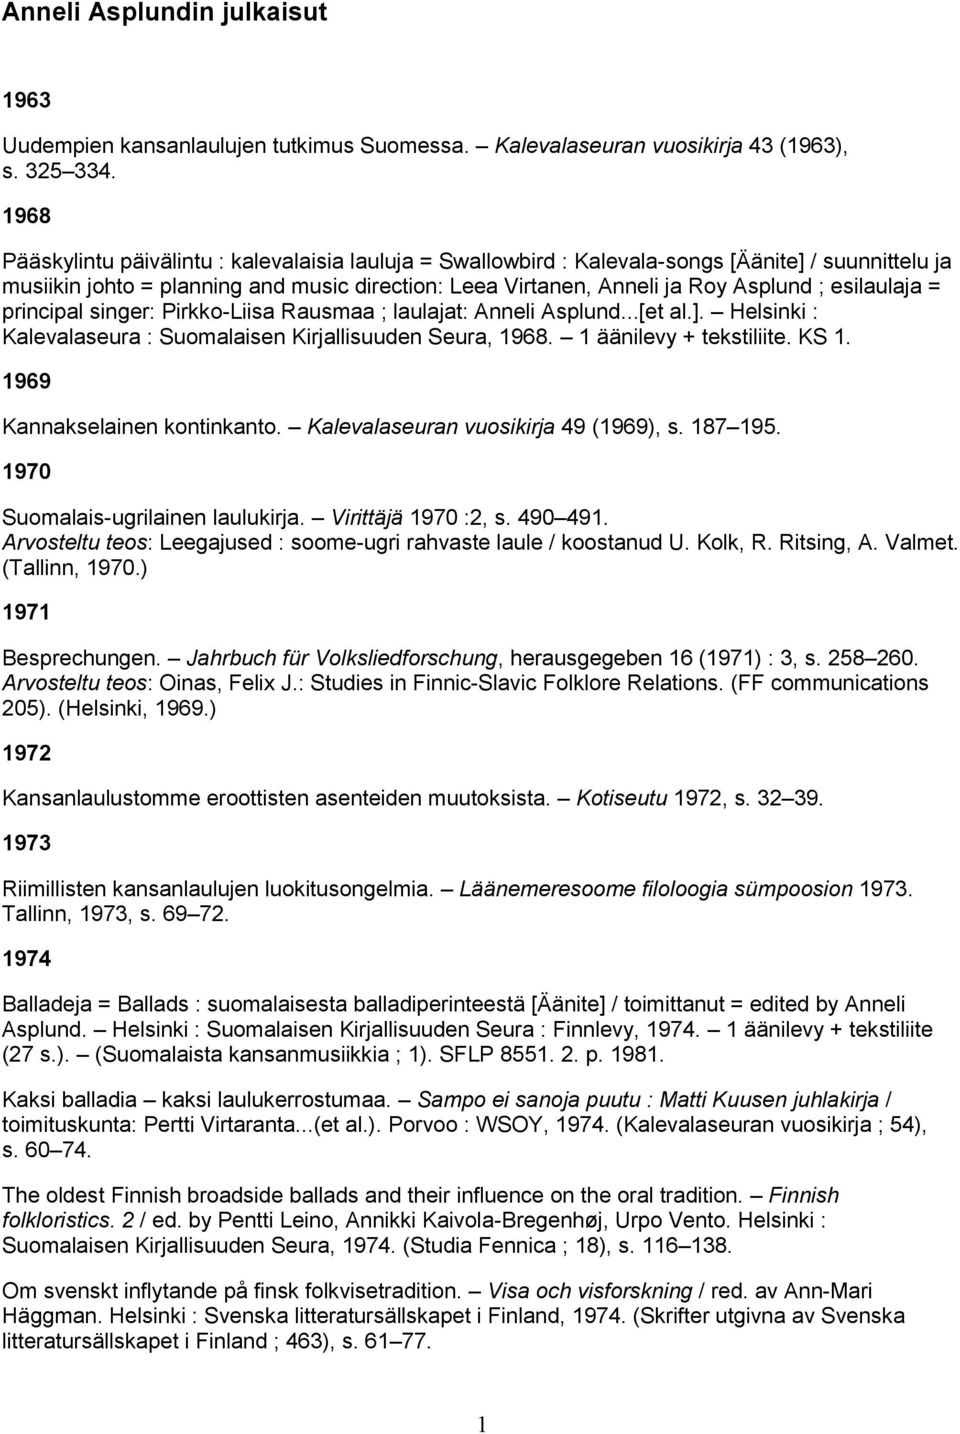 esilaulaja = principal singer: Pirkko-Liisa Rausmaa ; laulajat: Anneli Asplund...[et al.]. Helsinki : Kalevalaseura : Suomalaisen Kirjallisuuden Seura, 1968. 1 äänilevy + tekstiliite. KS 1.